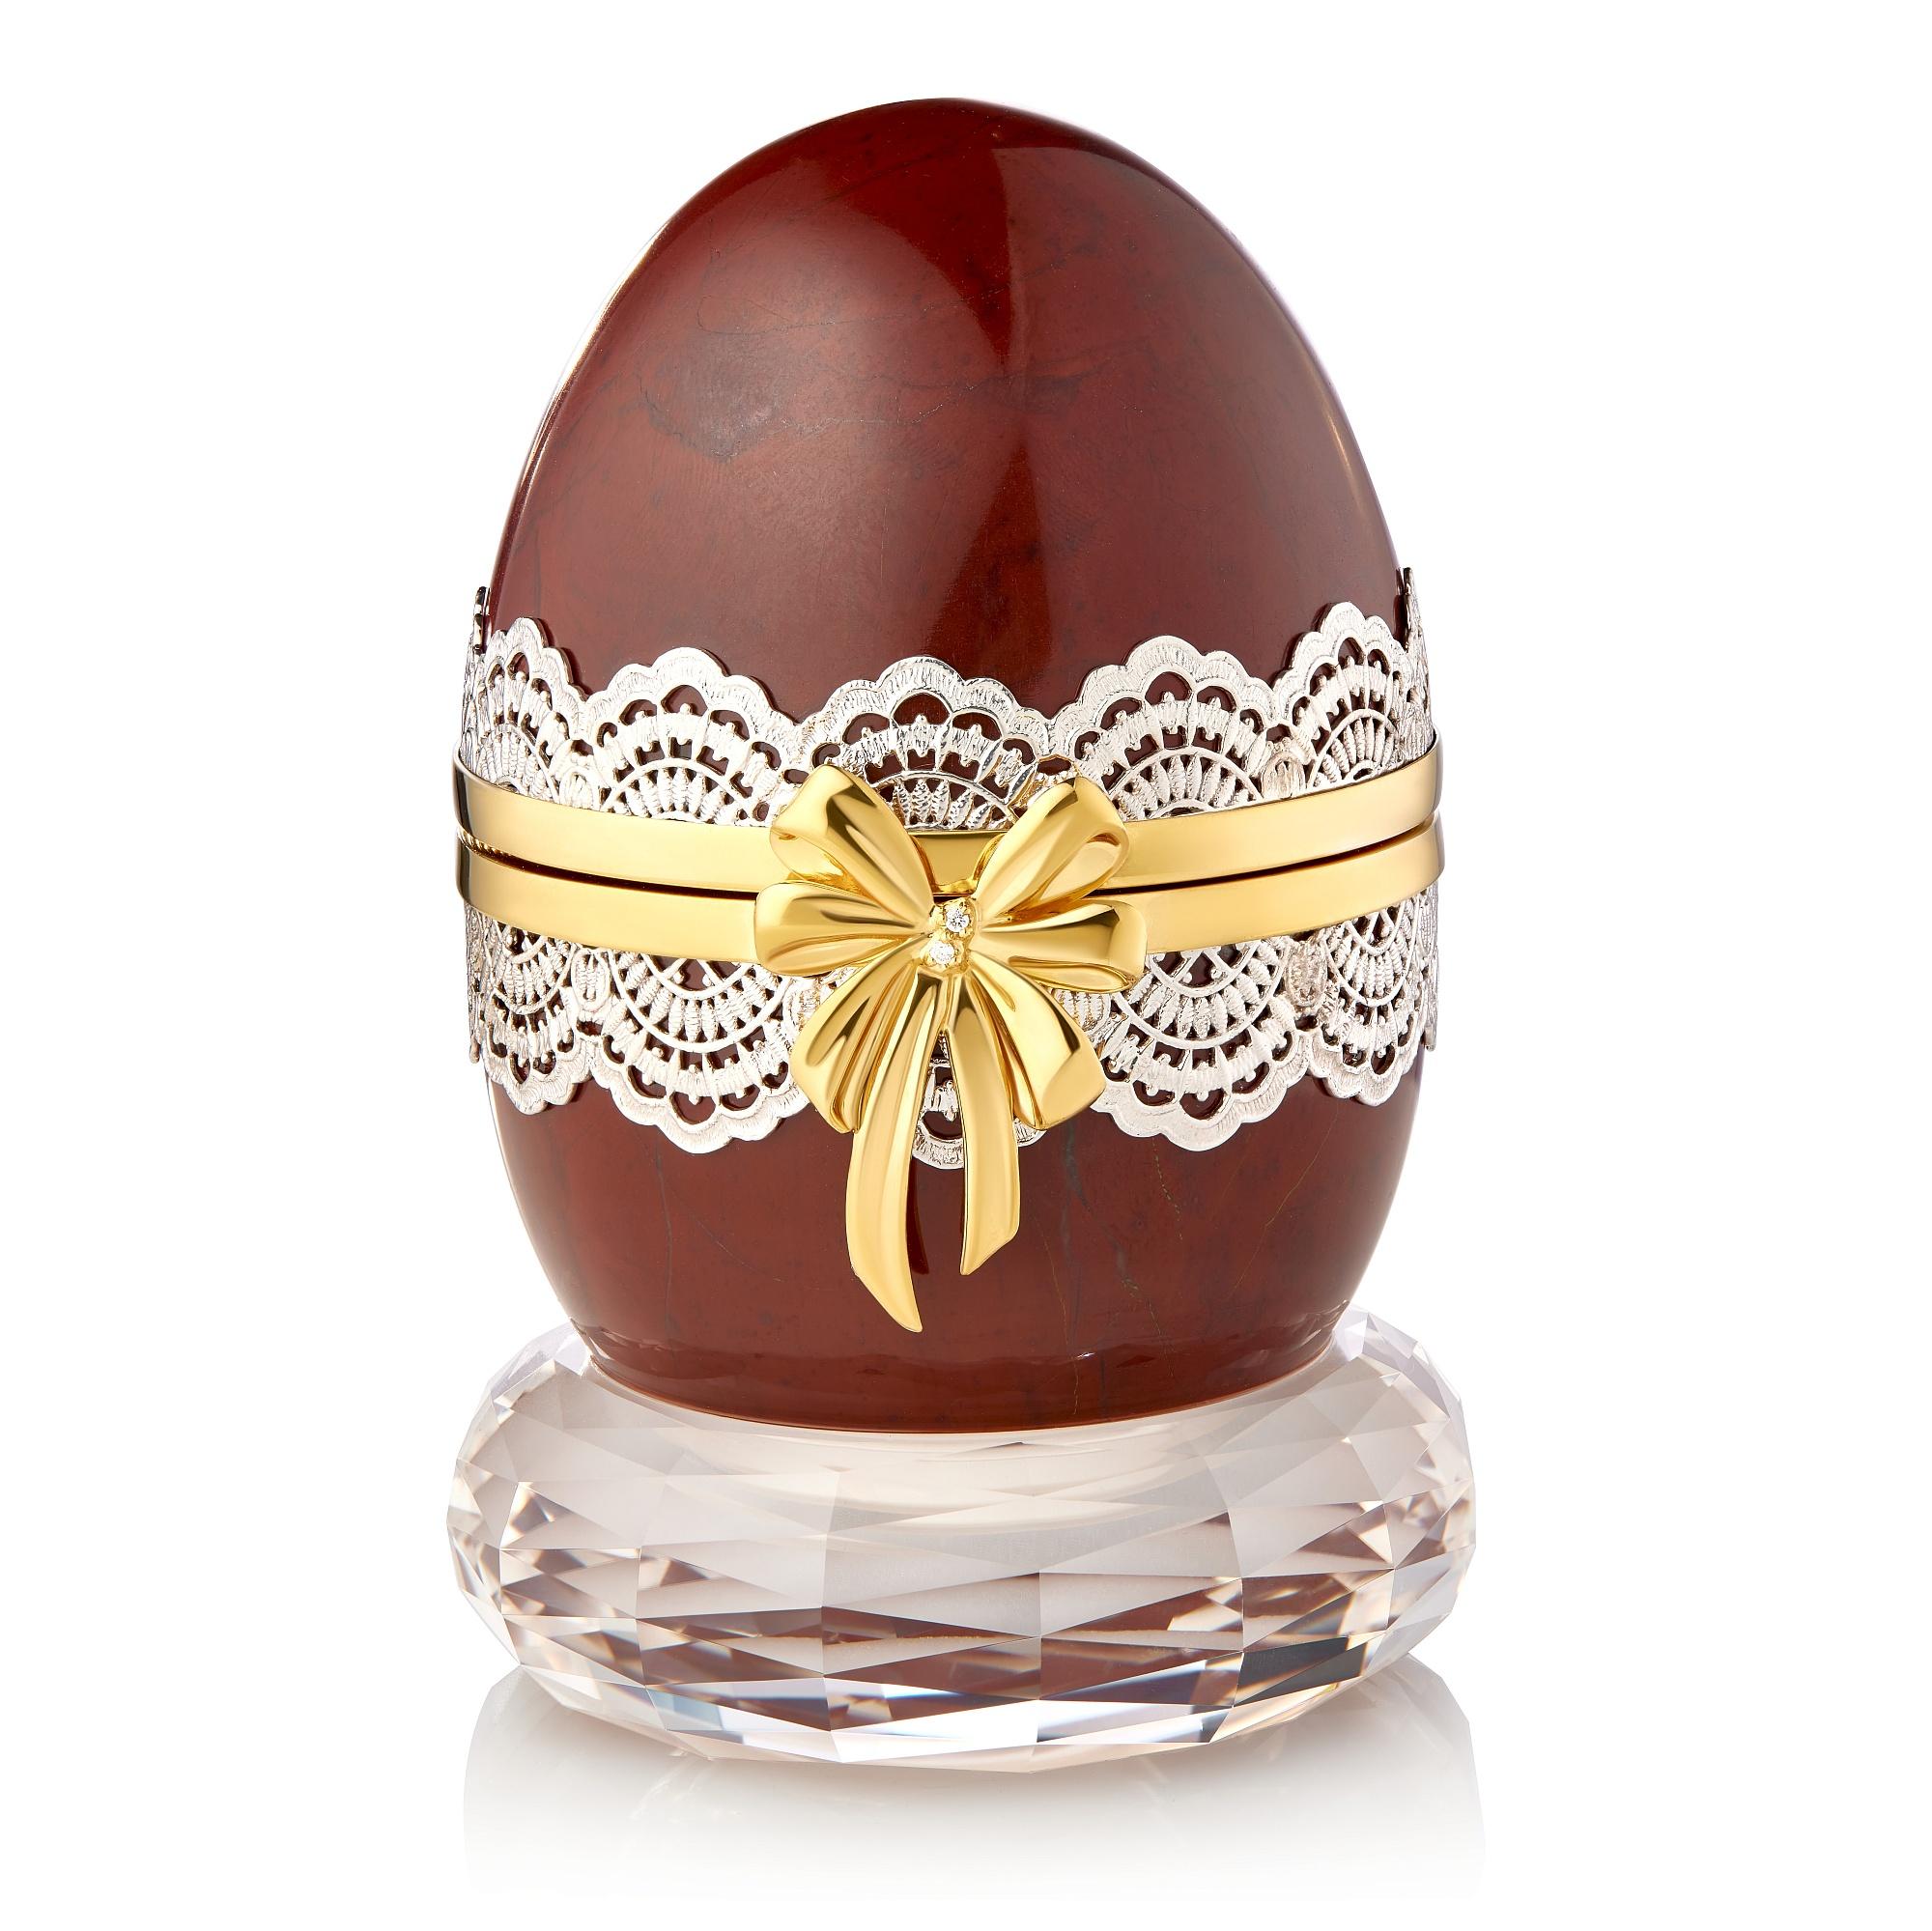 Le superbe œuf de Pâques en argent plaqué or de MOISEIKIN est une miniature inspirante et enchanteresse à préparer pour les fêtes de Pâques de cette année. 

Cet œuf de Pâques orné est soigneusement sculpté dans du jaspe naturel et orné d'un délicat